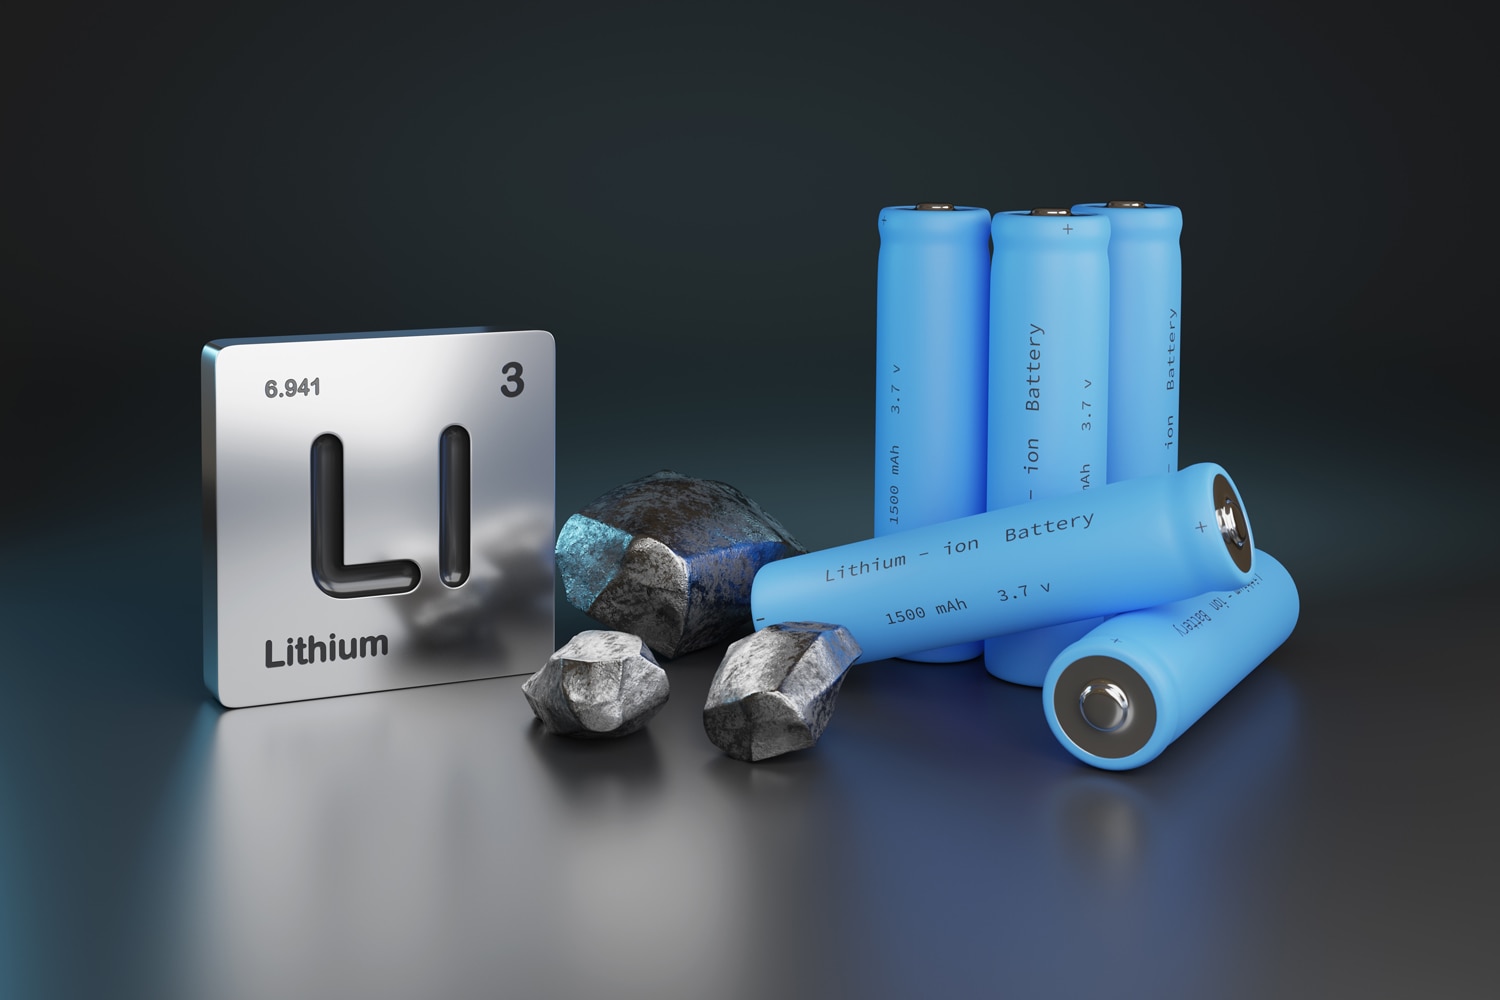 Lithium-ion batteries, metallic lithium, and element symbol